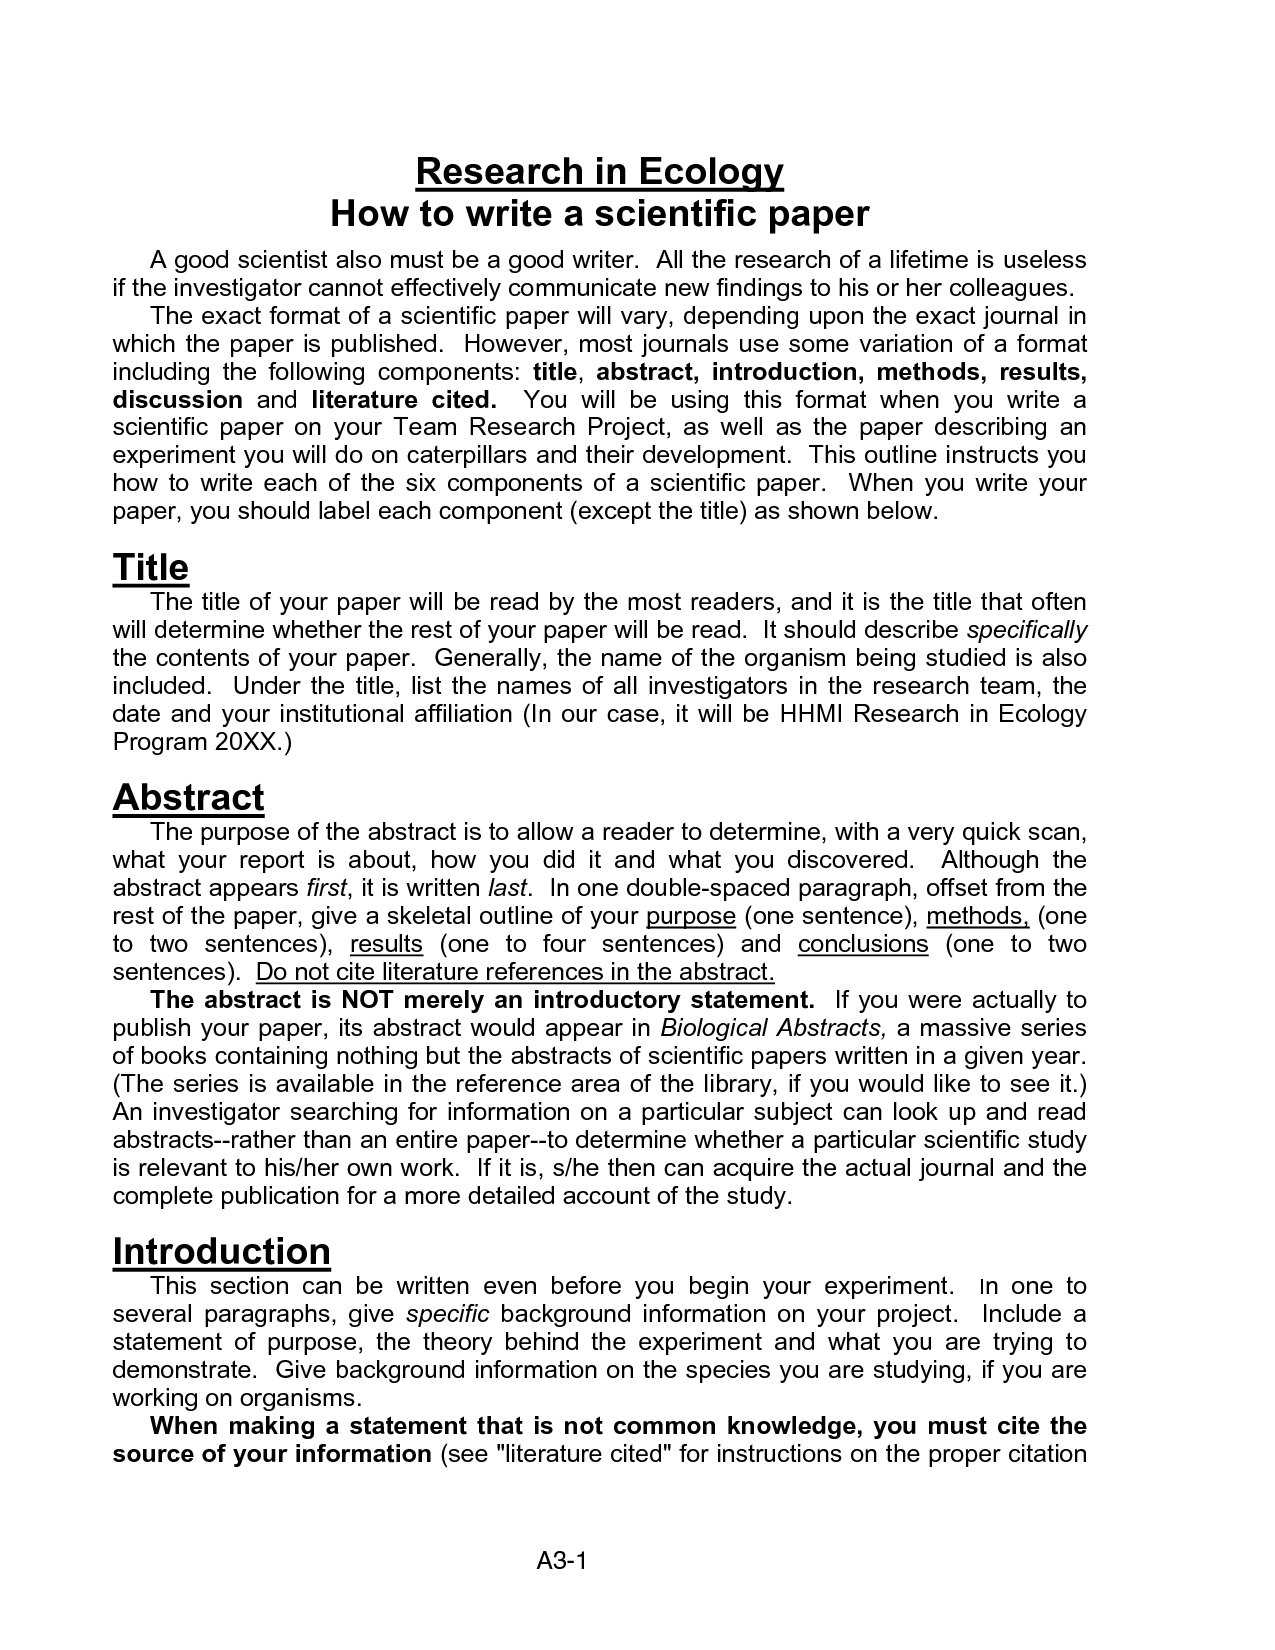 scientific method essay example